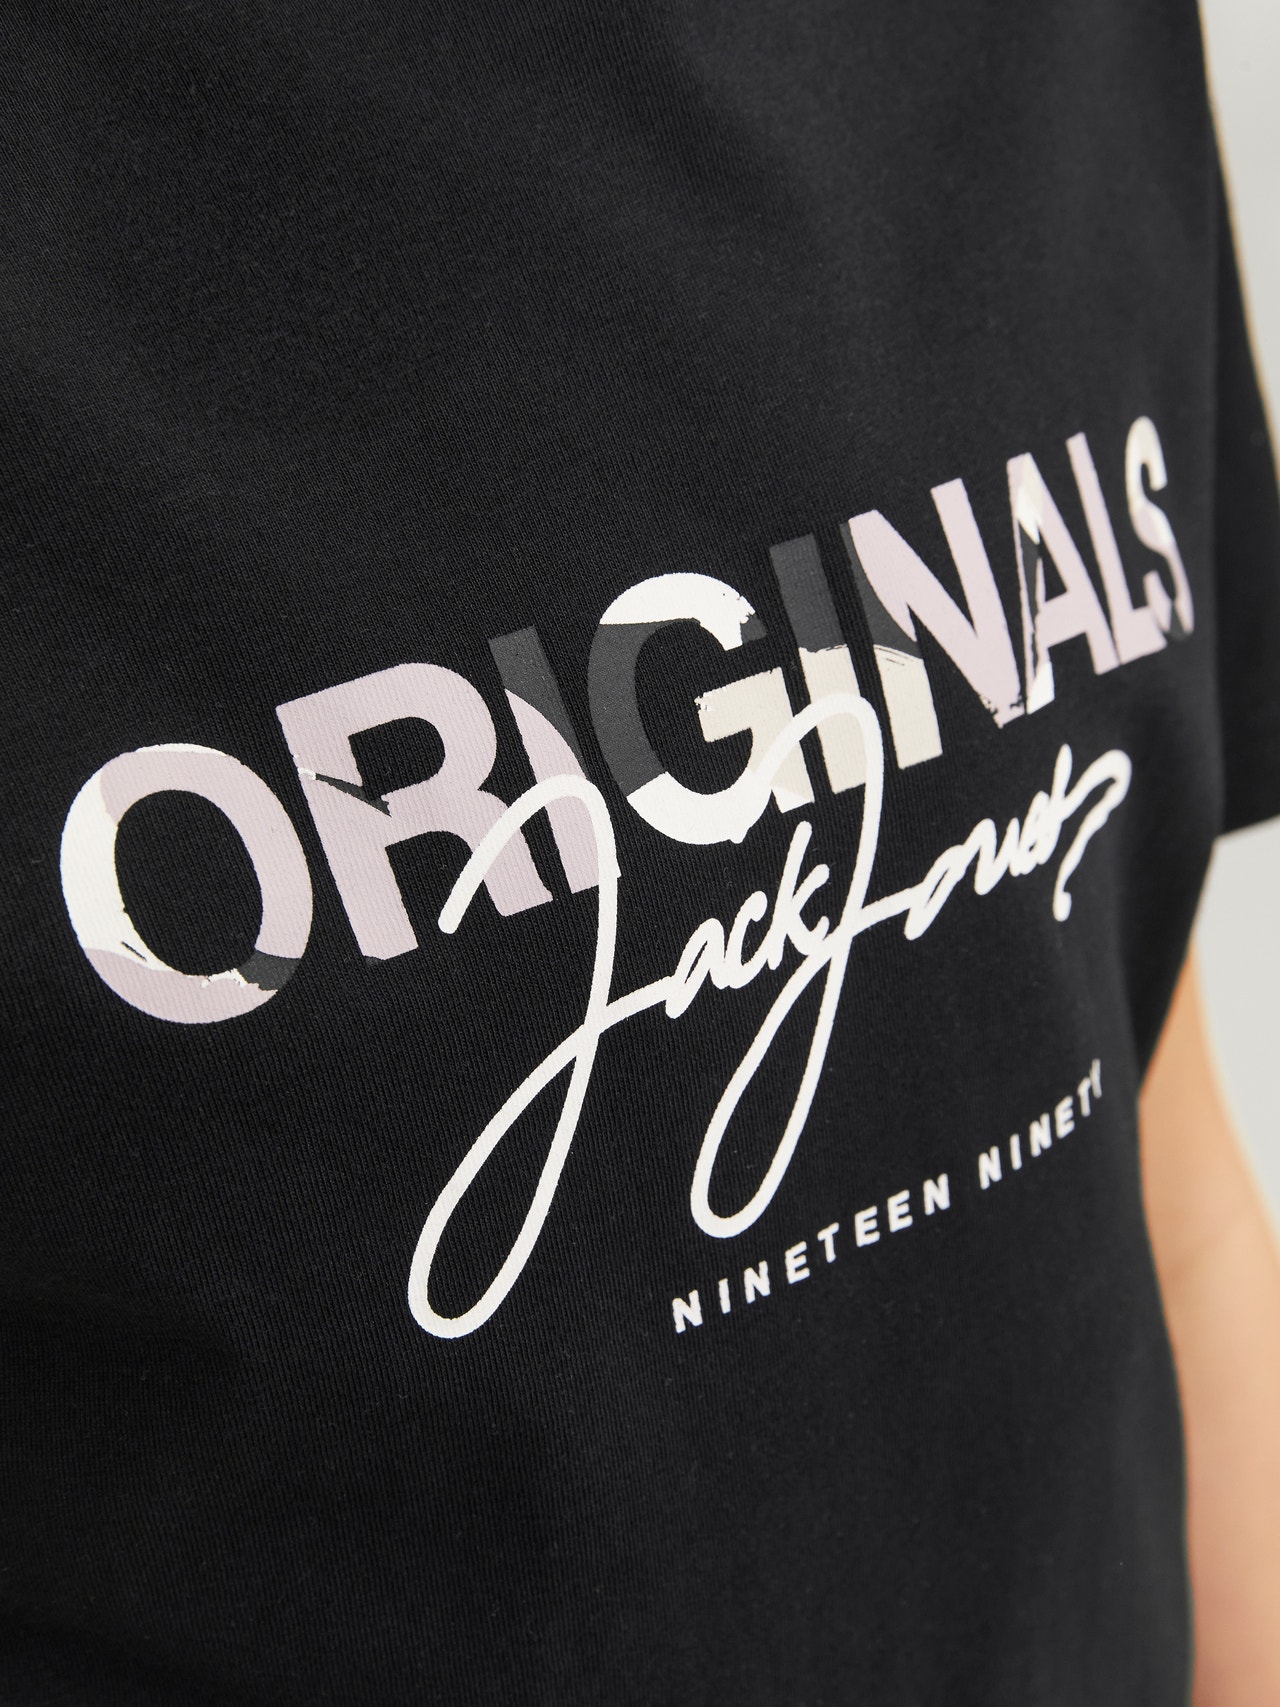 Jack & Jones Tryck T-shirt För pojkar -Black - 12257133